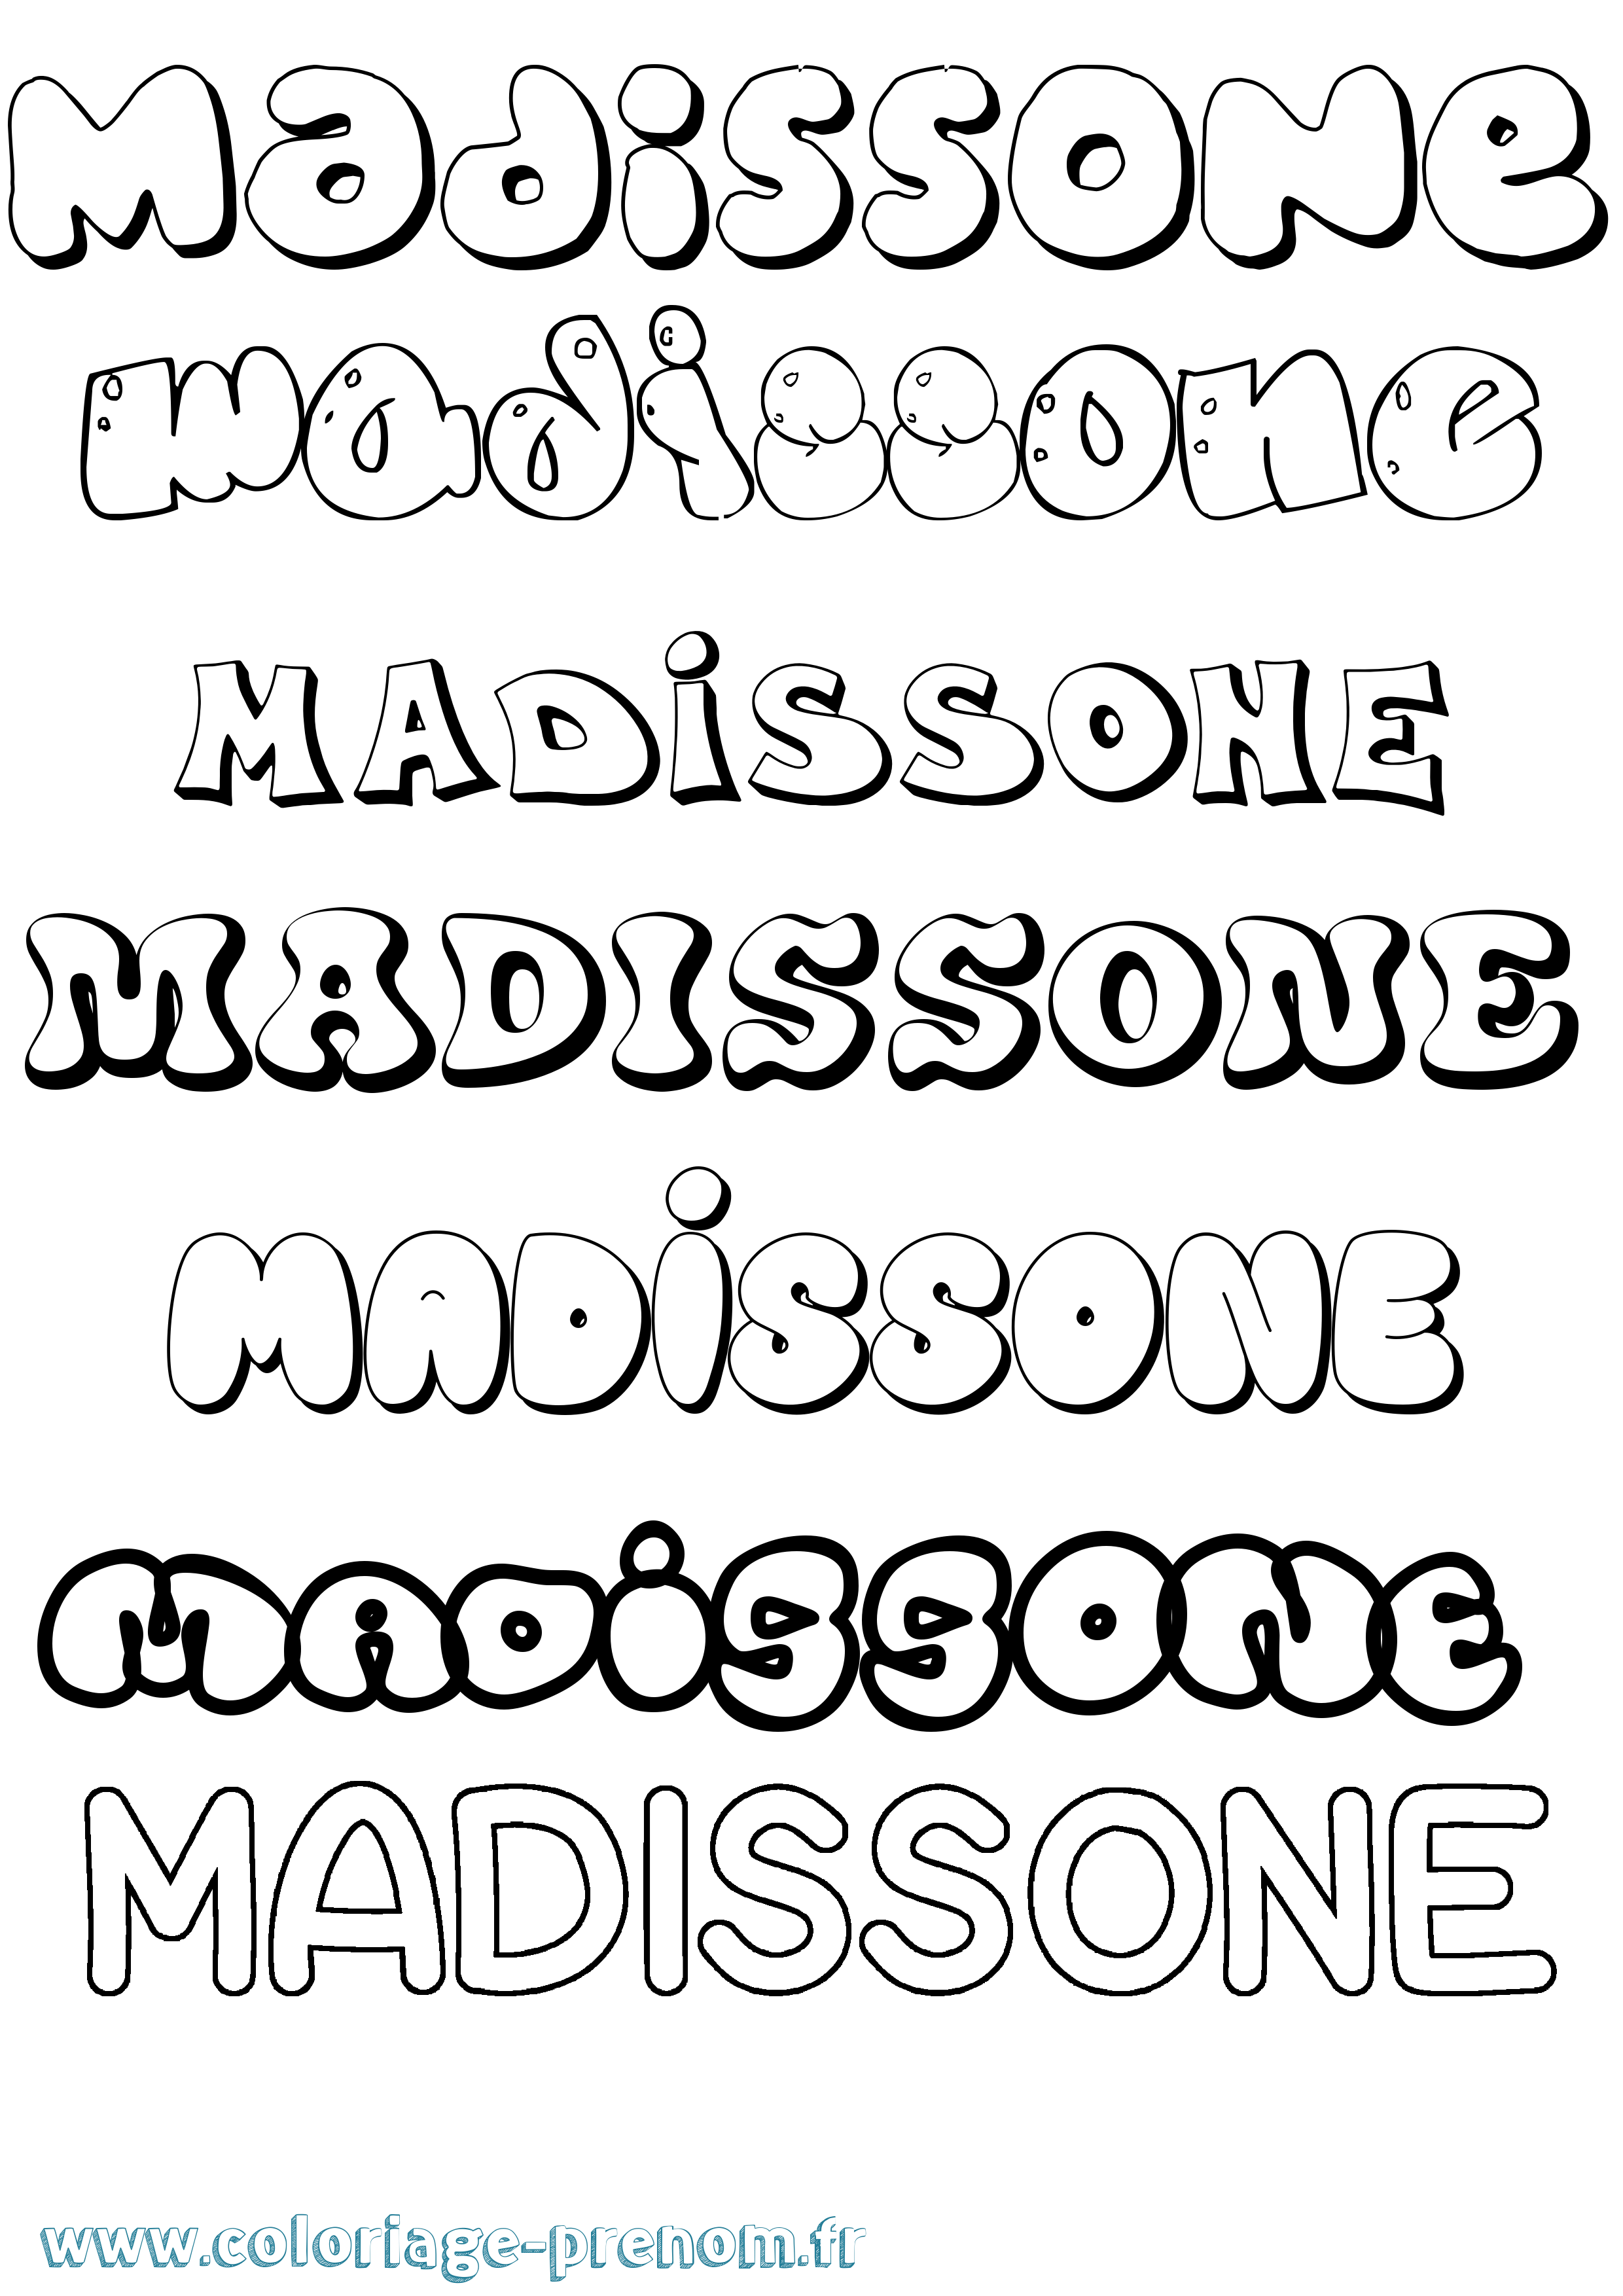 Coloriage prénom Madissone Bubble